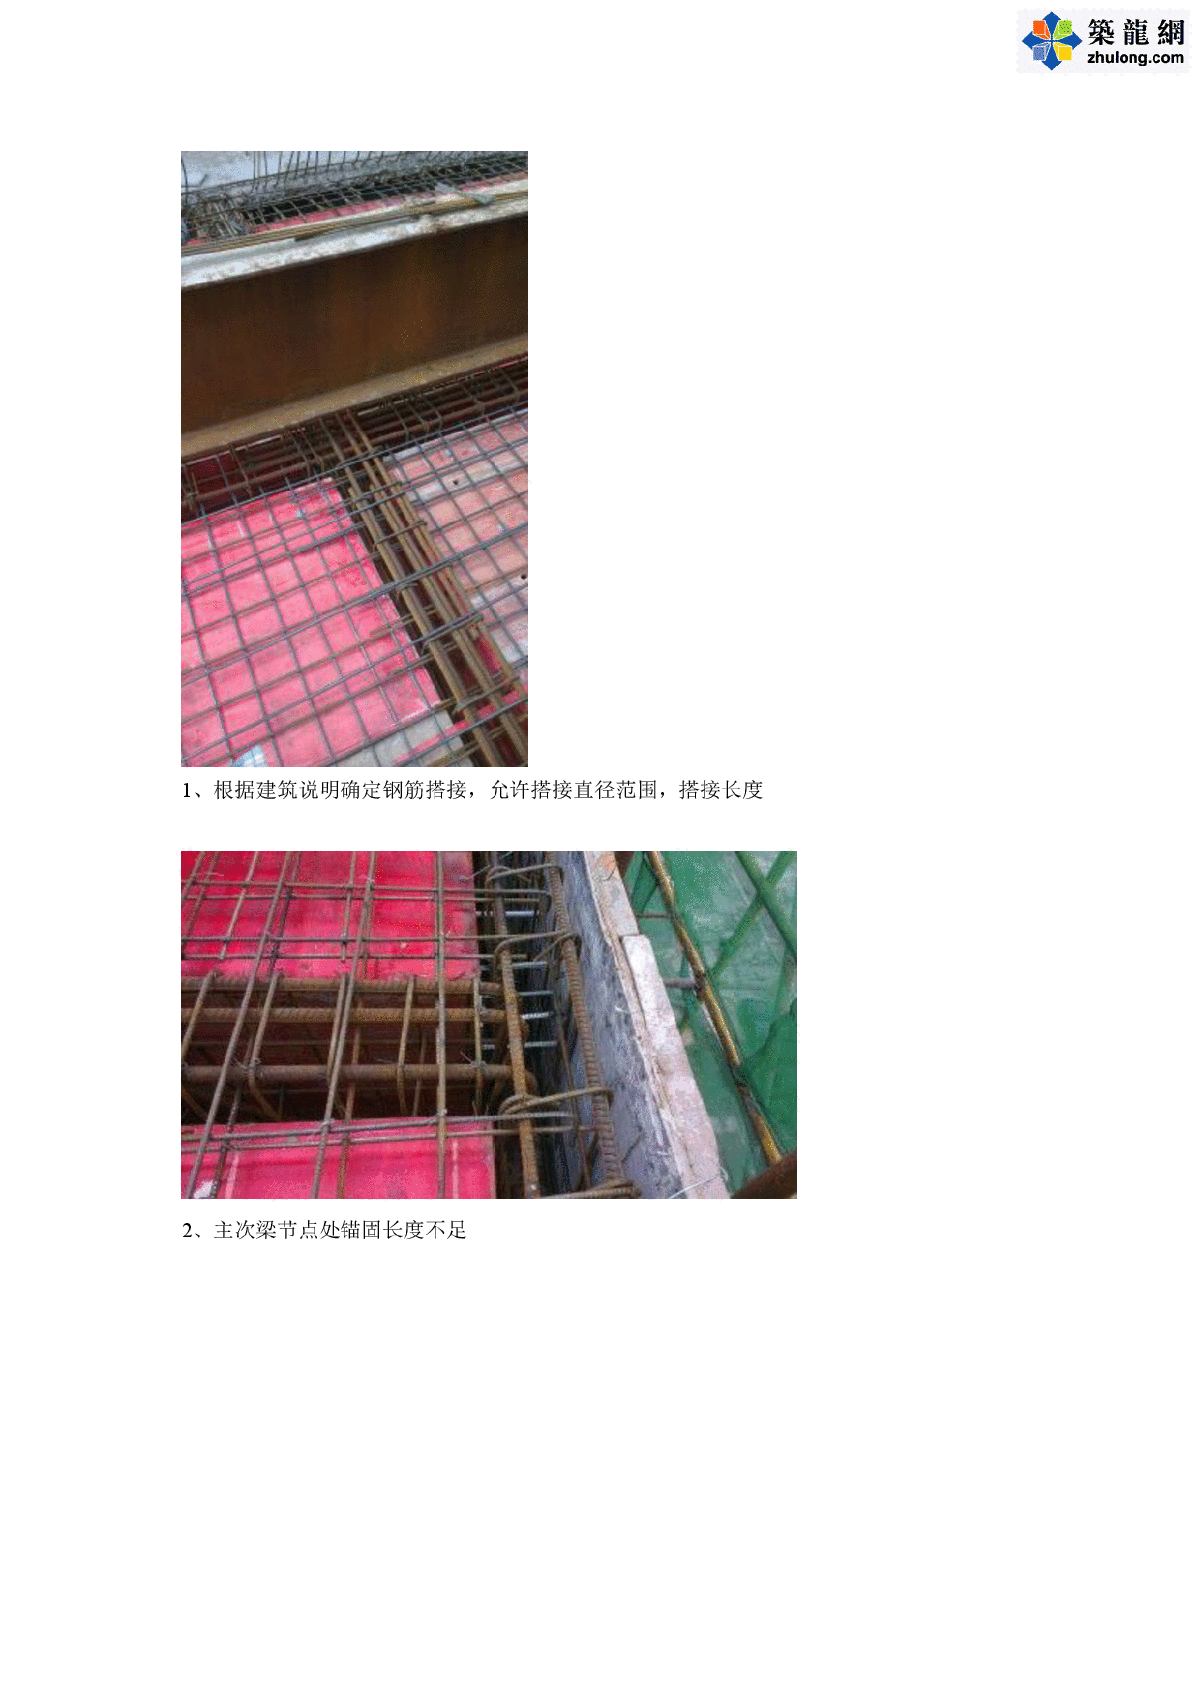 建筑工程钢筋工程常见质量问题图片